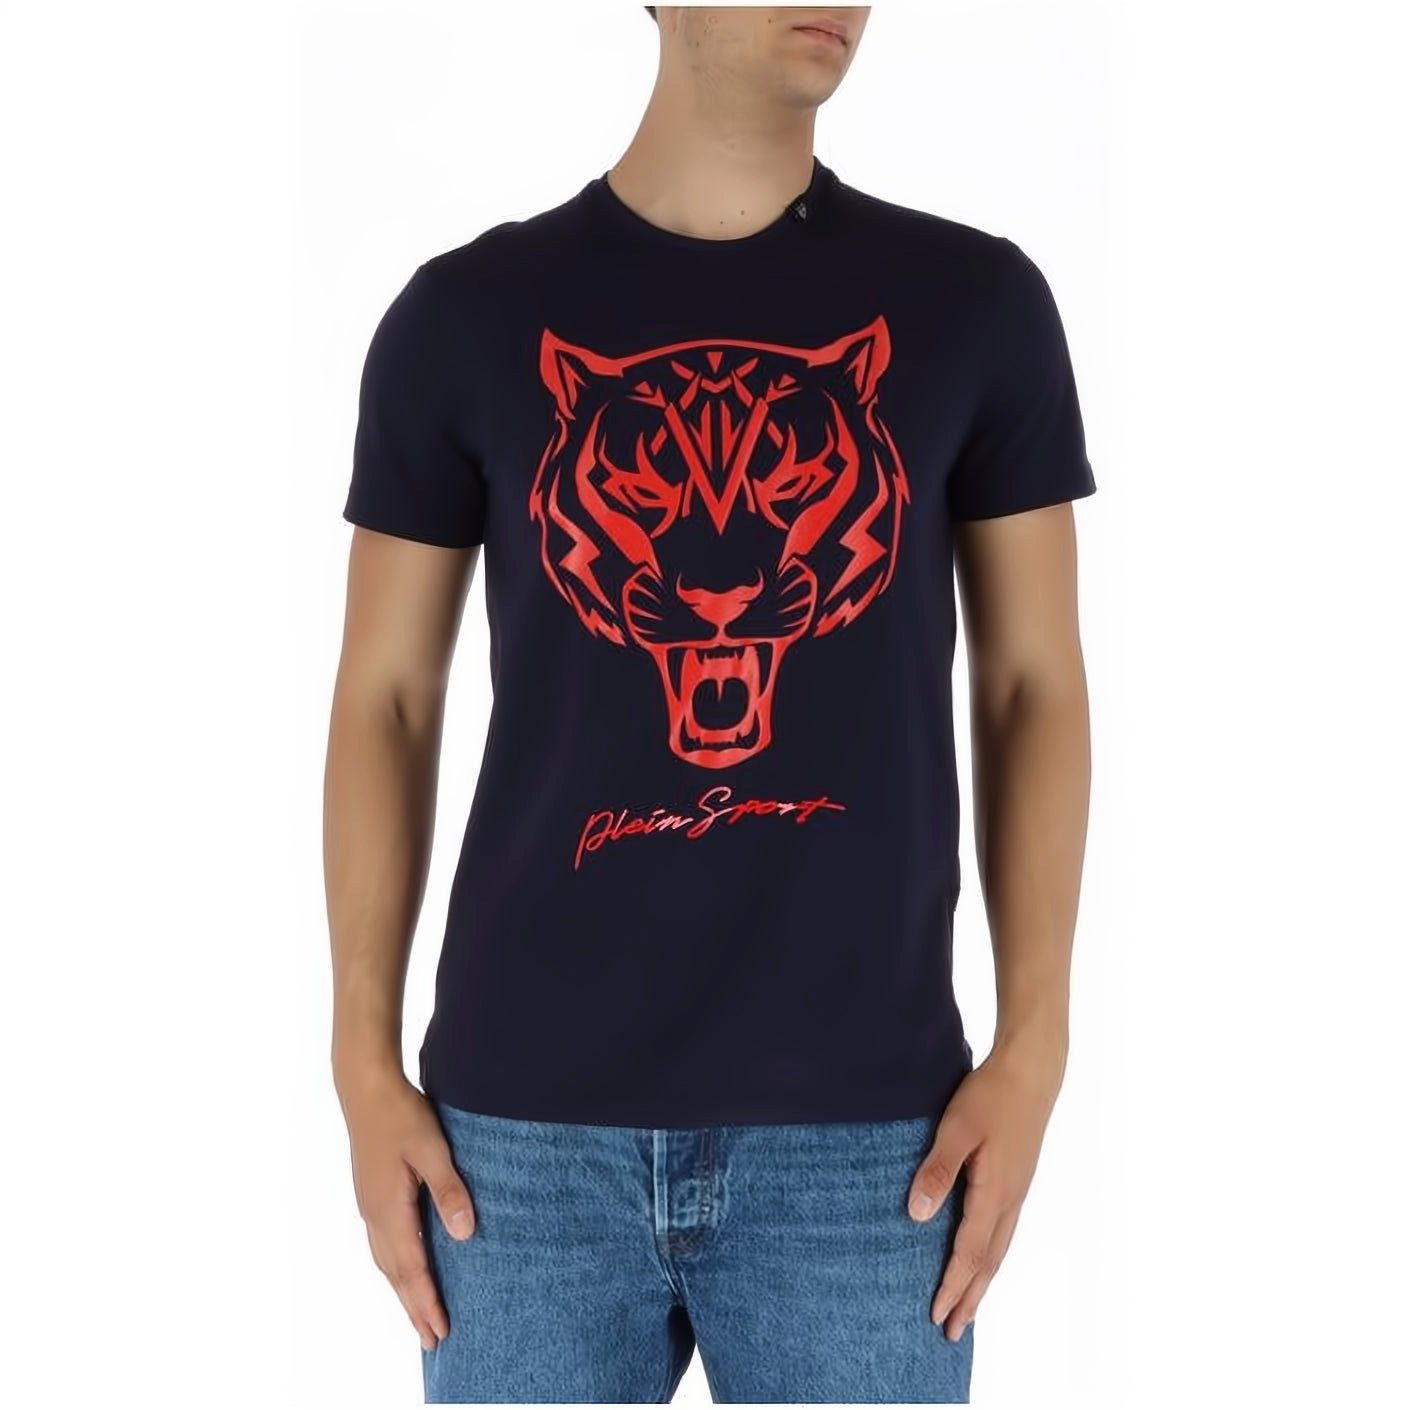 PLEIN SPORT T-Shirt ROUND NECK Stylischer Look, hoher Tragekomfort, vielfältige Farbauswahl | T-Shirts